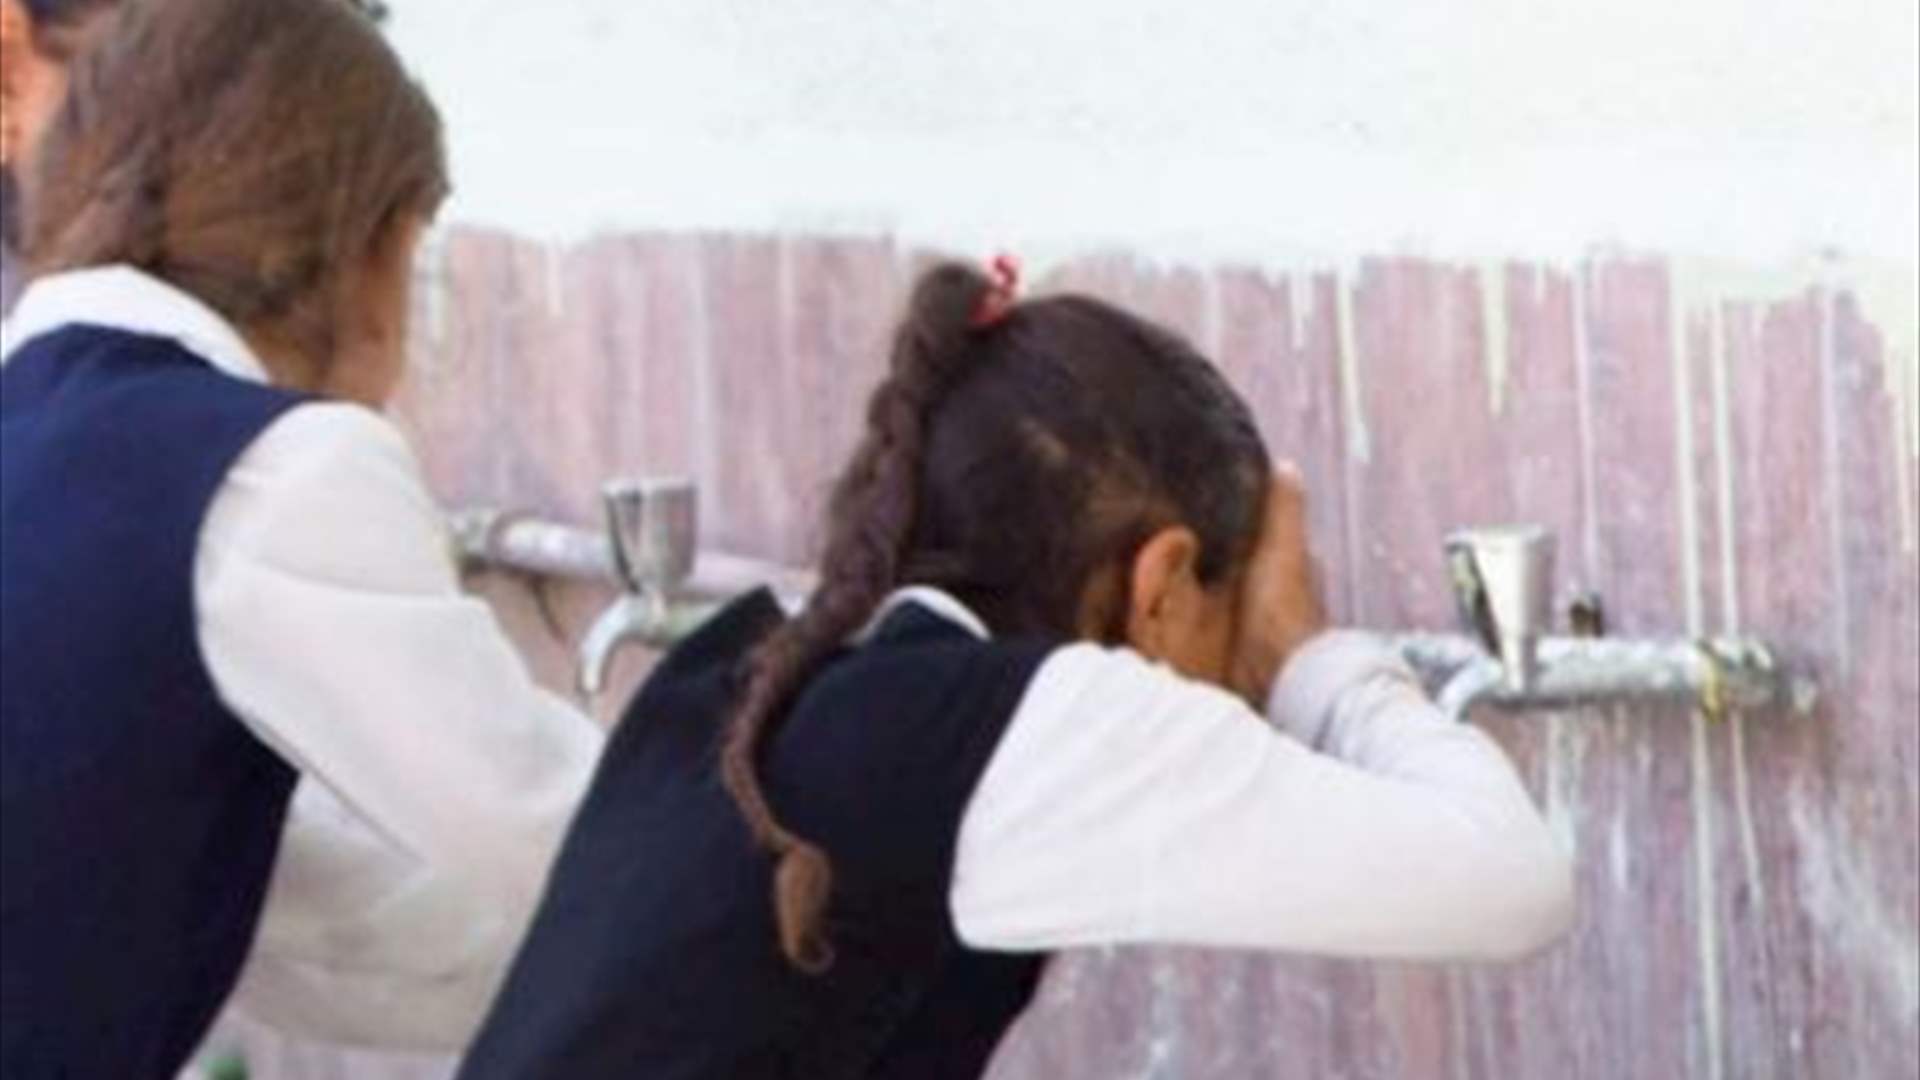 ثلث تلاميذ العالم لا يحصلون على مياه الشرب في مدارسهم بحسب اليونسكو